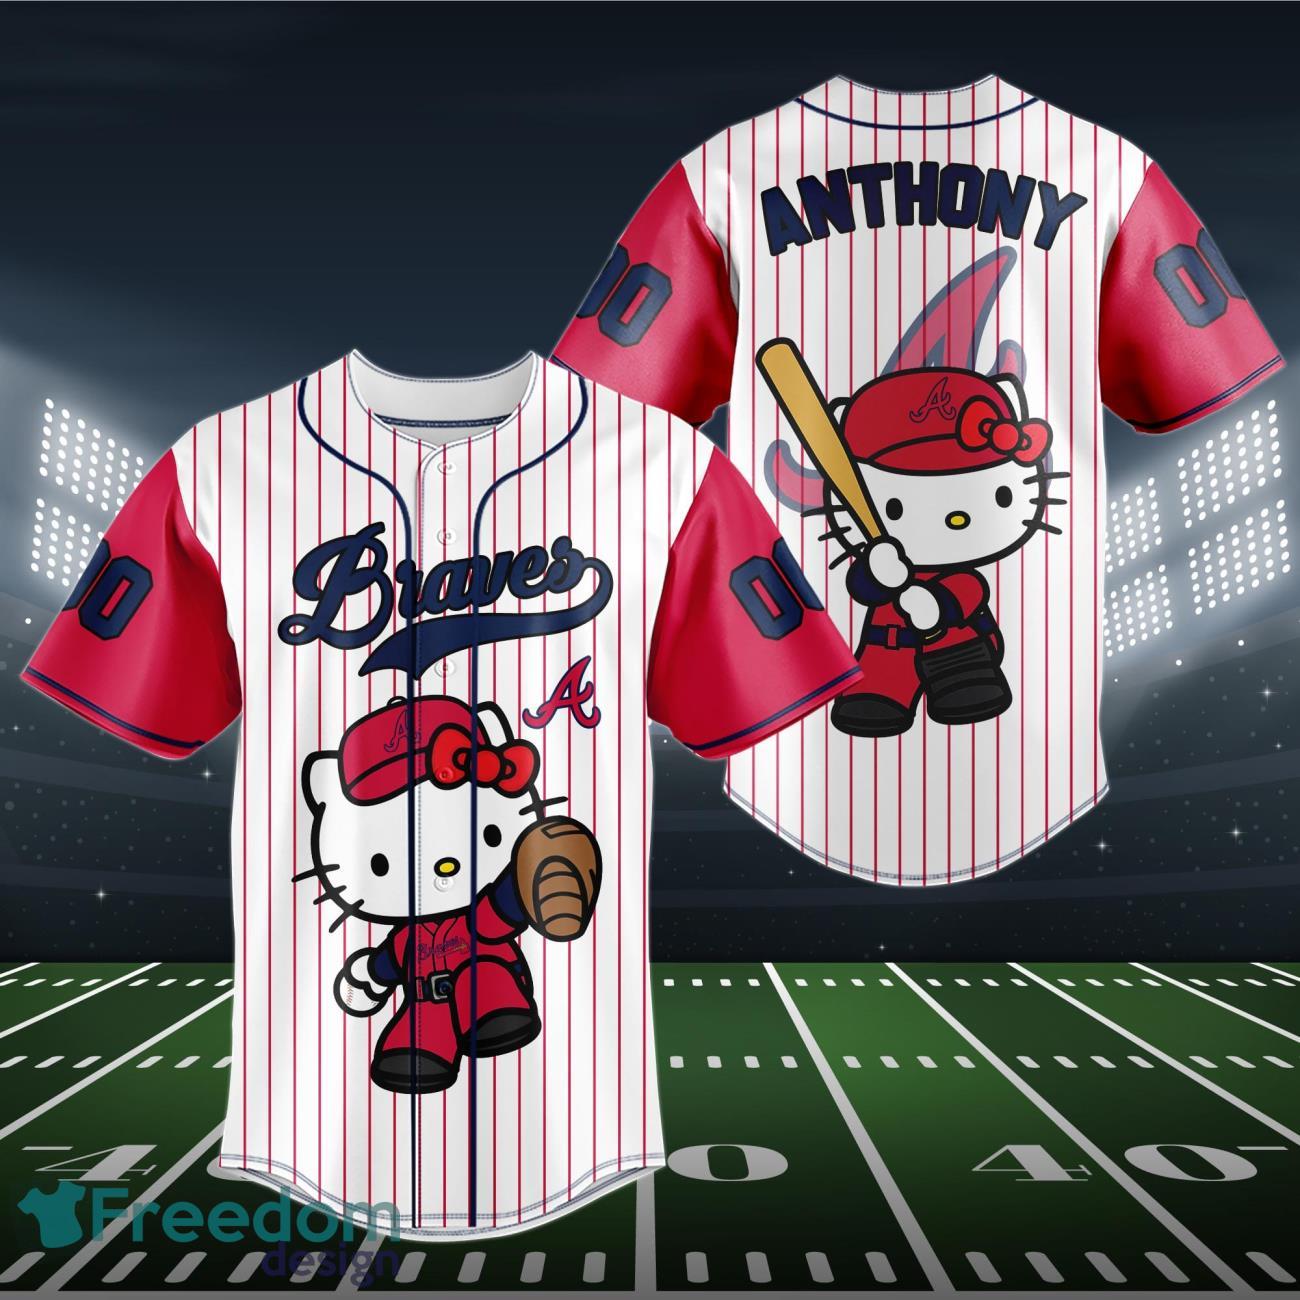 red red,,, Custom Name Atlanta Braves Baseball Jersey,, new,,!! Custom shirt